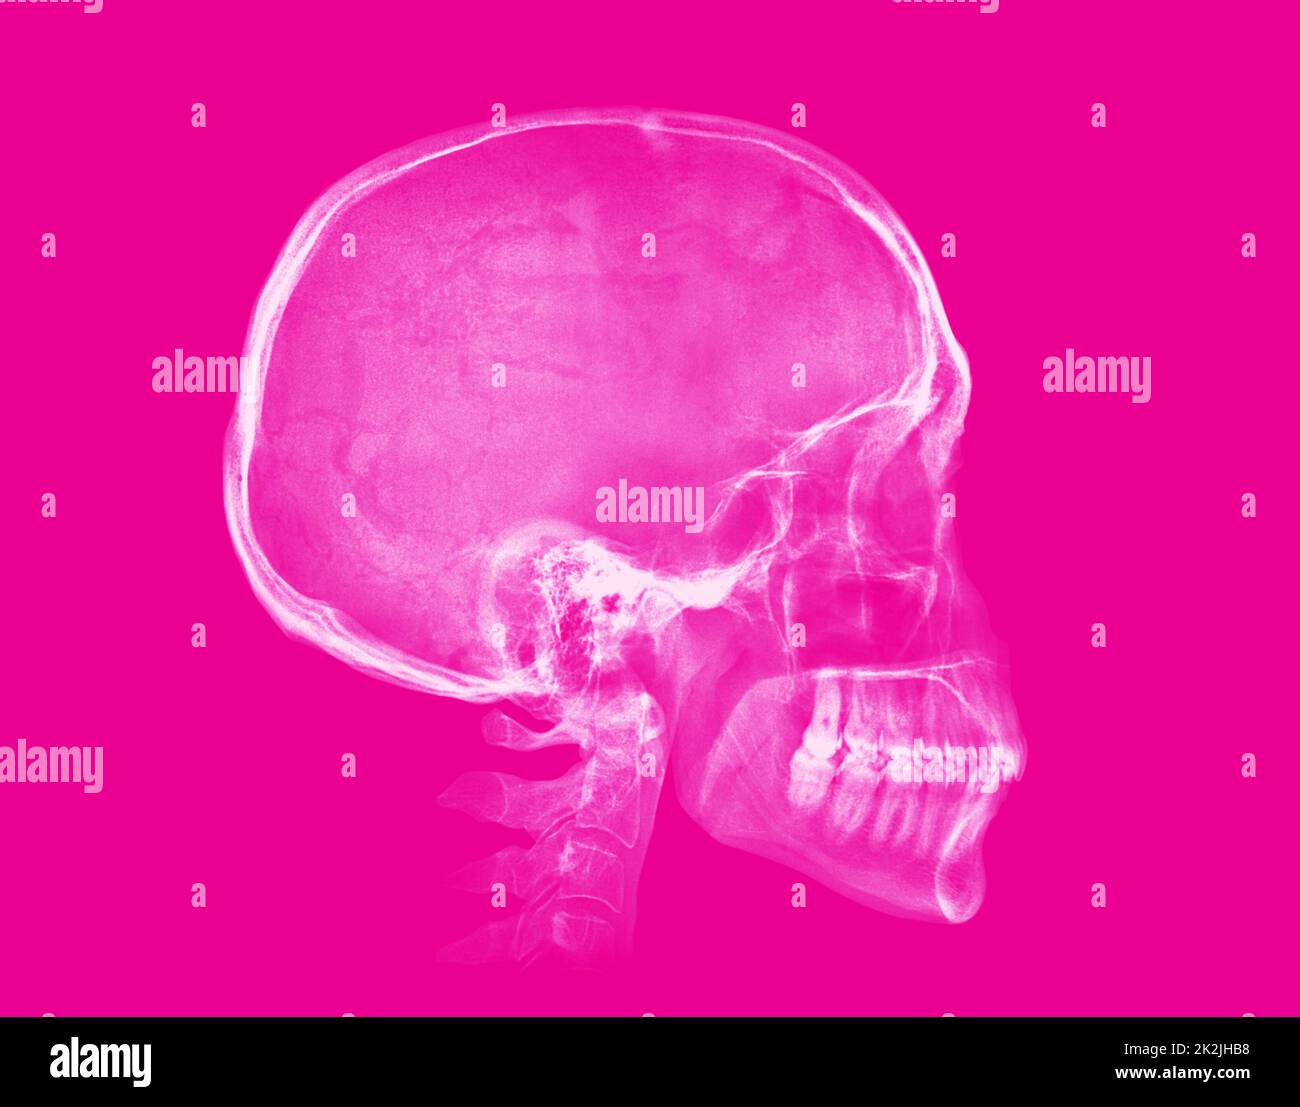 Cranio umano. Immagine radiografica su sfondo rosa Foto Stock